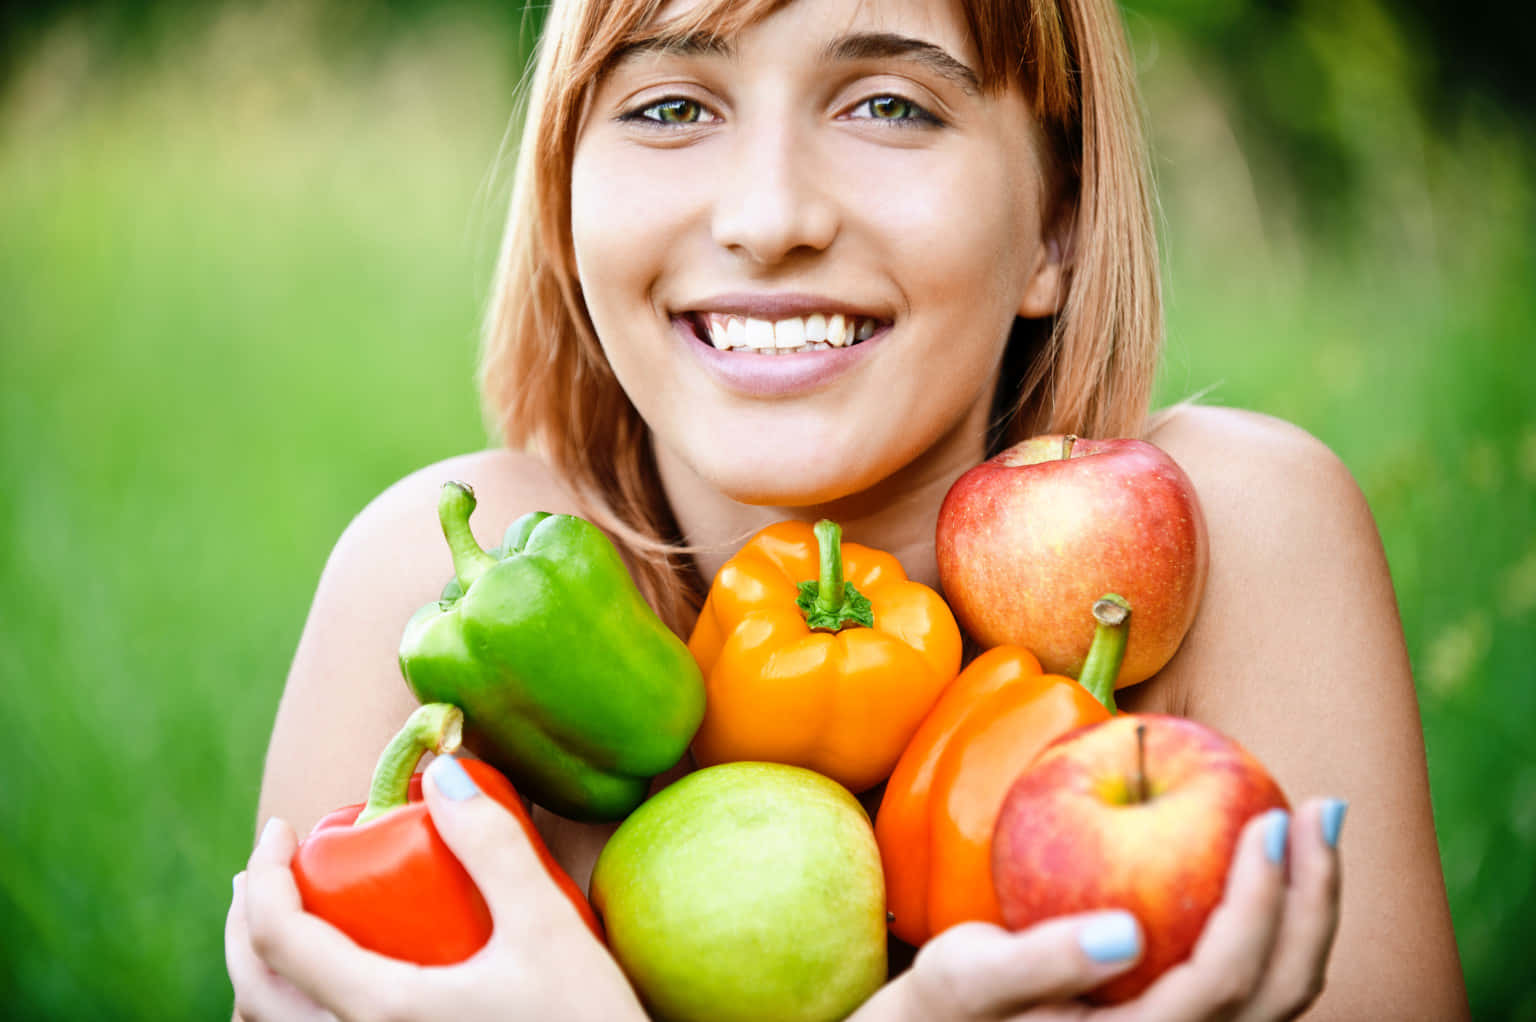 Enkvinna Håller I En Bunt Med Frukt Och Grönsaker